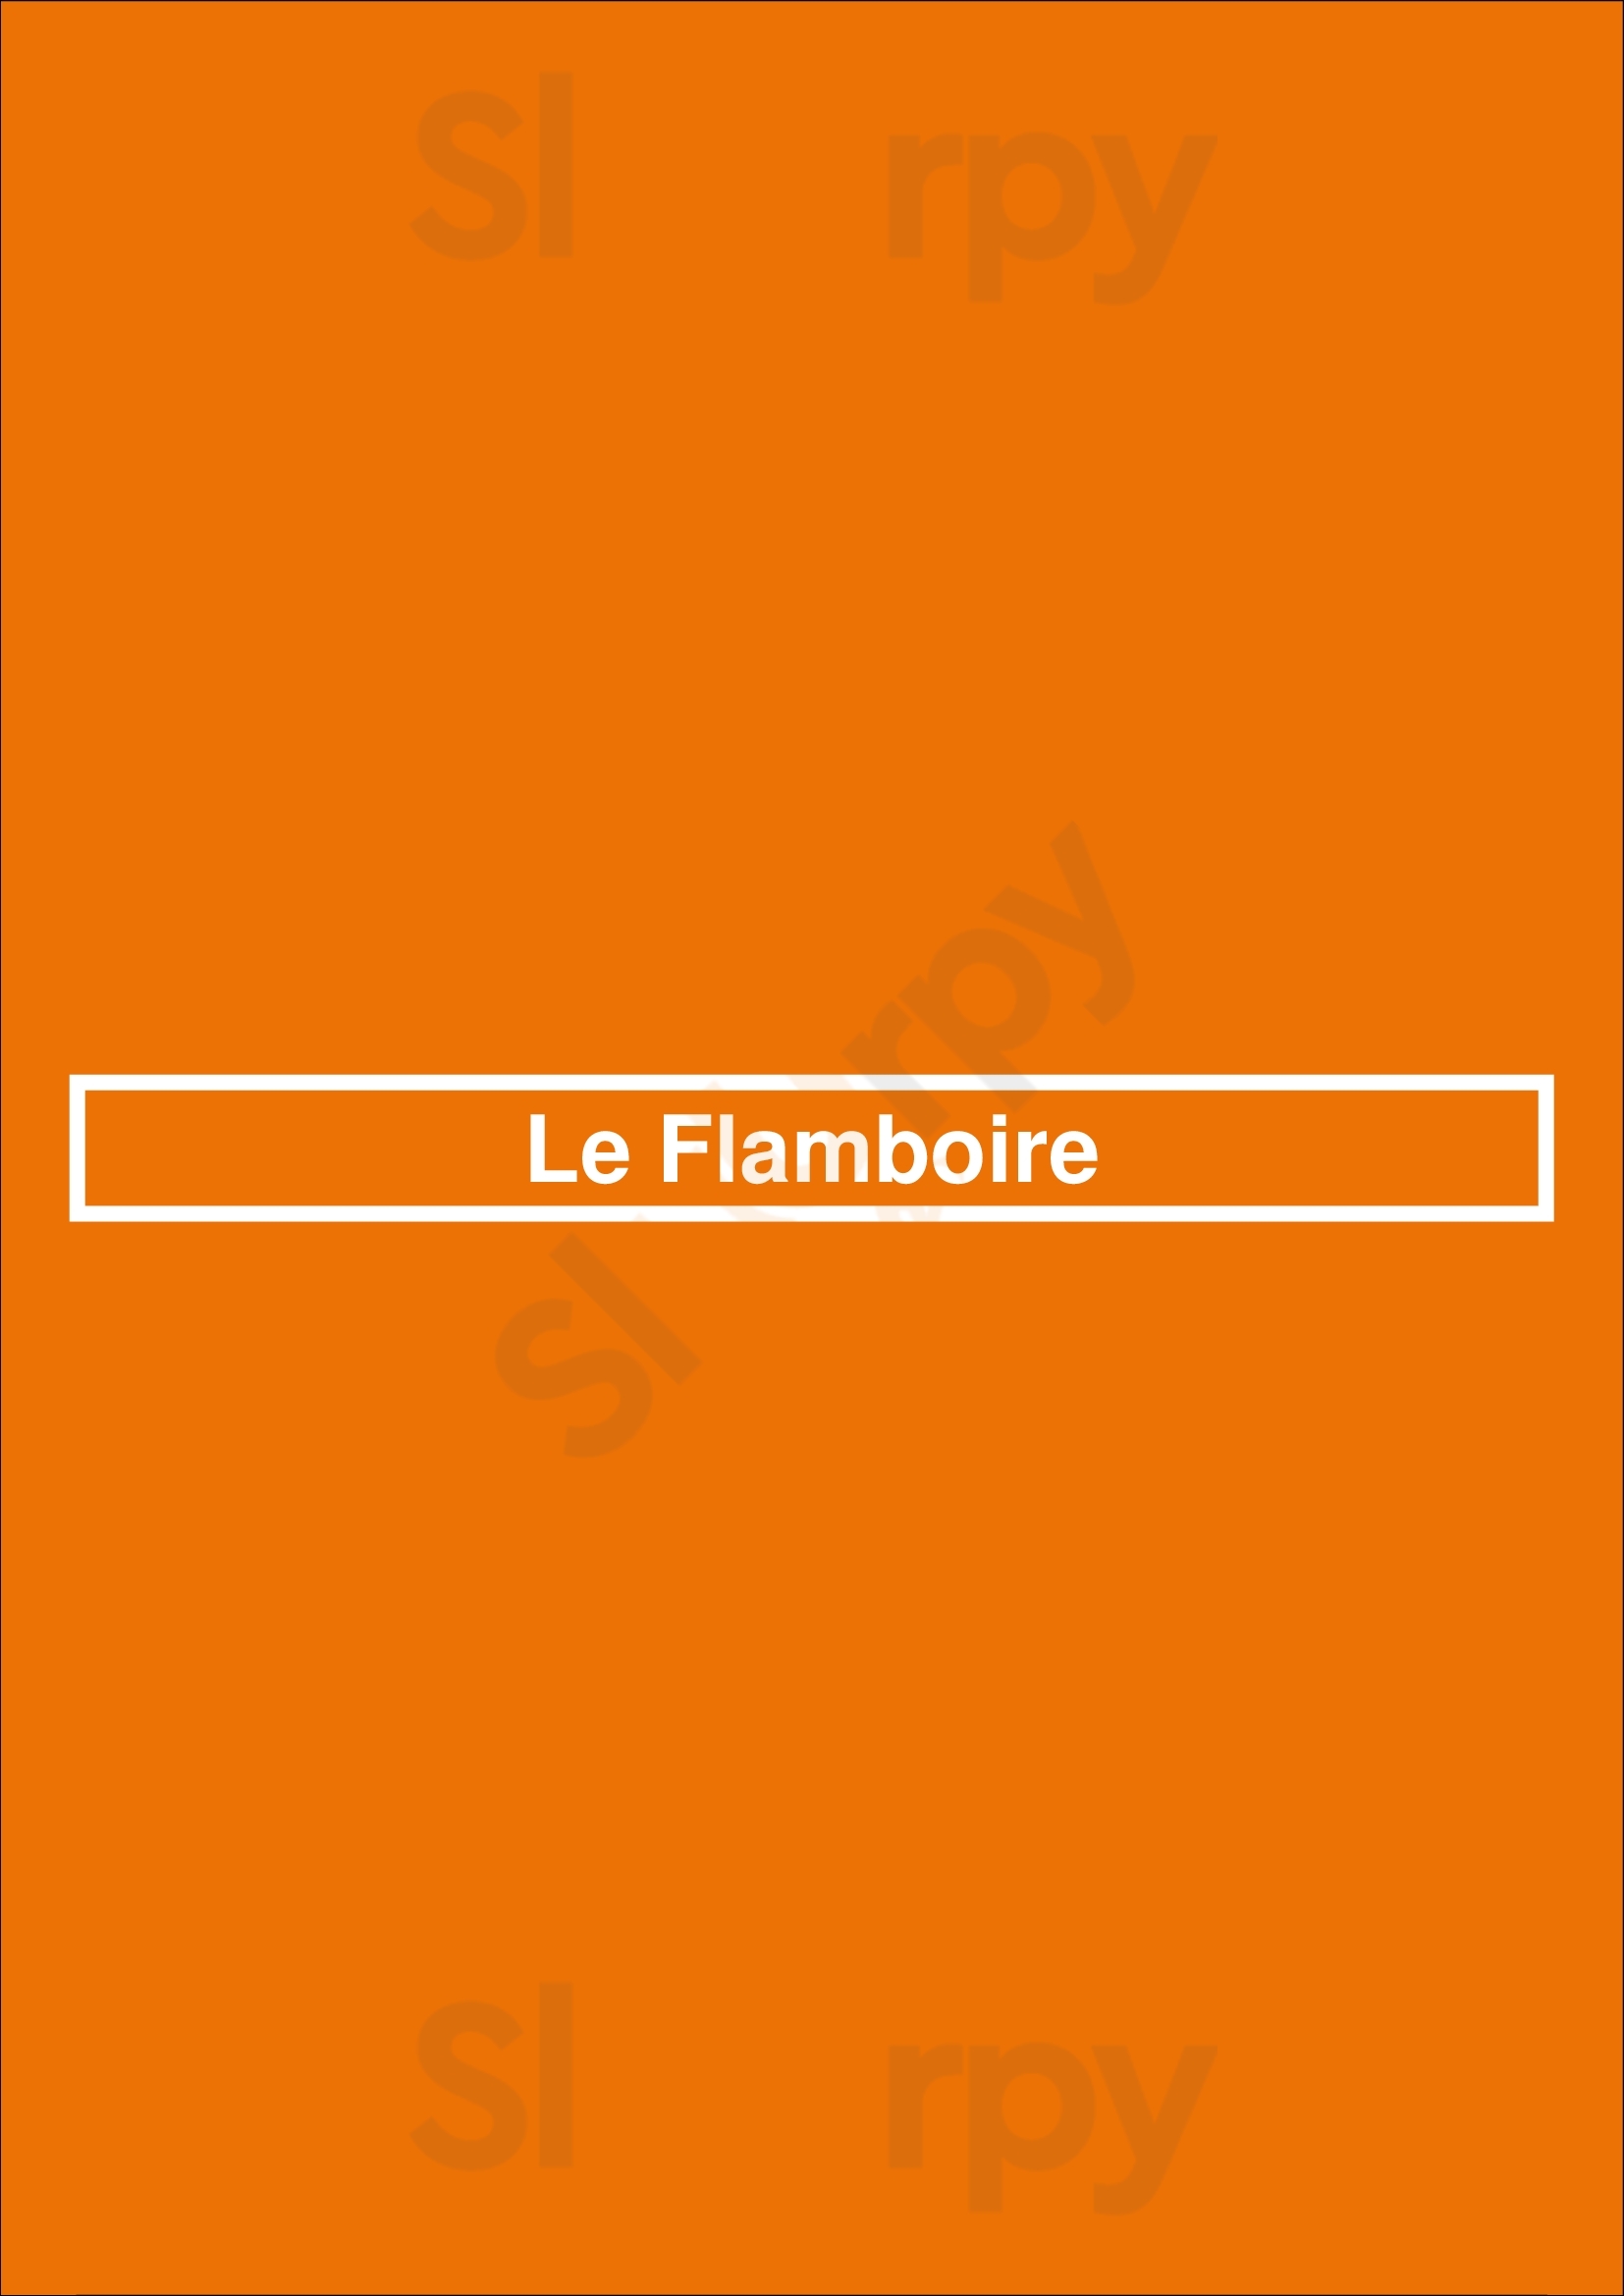 Le Flamboire Paris Menu - 1